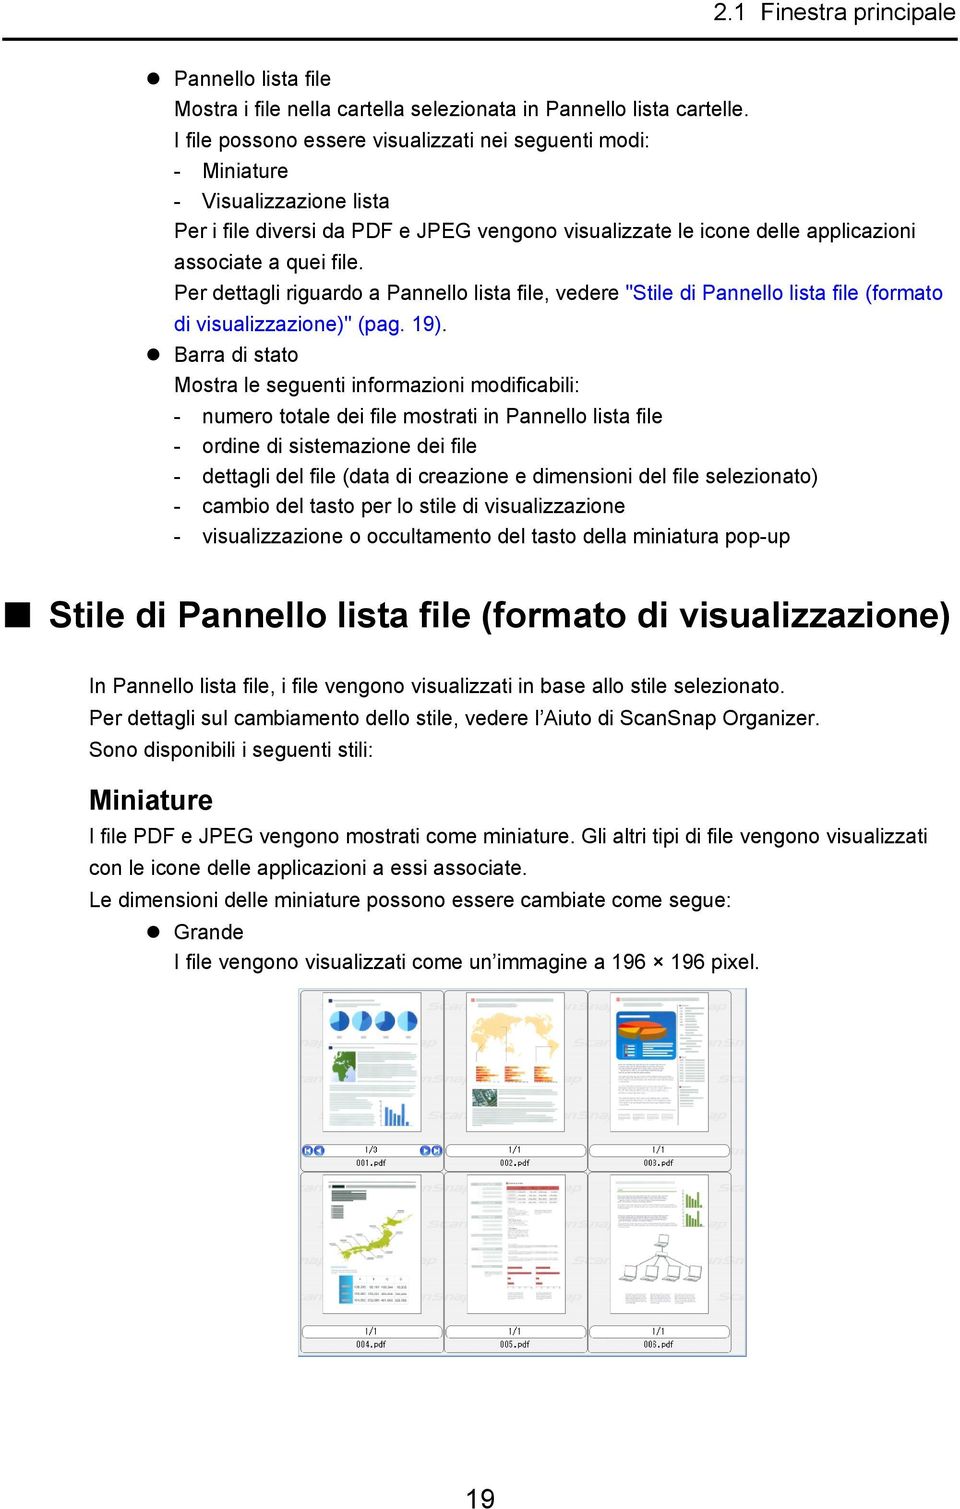 Per dettagli riguardo a Pannello lista file, vedere "Stile di Pannello lista file (formato di visualizzazione)" (pag. 19).